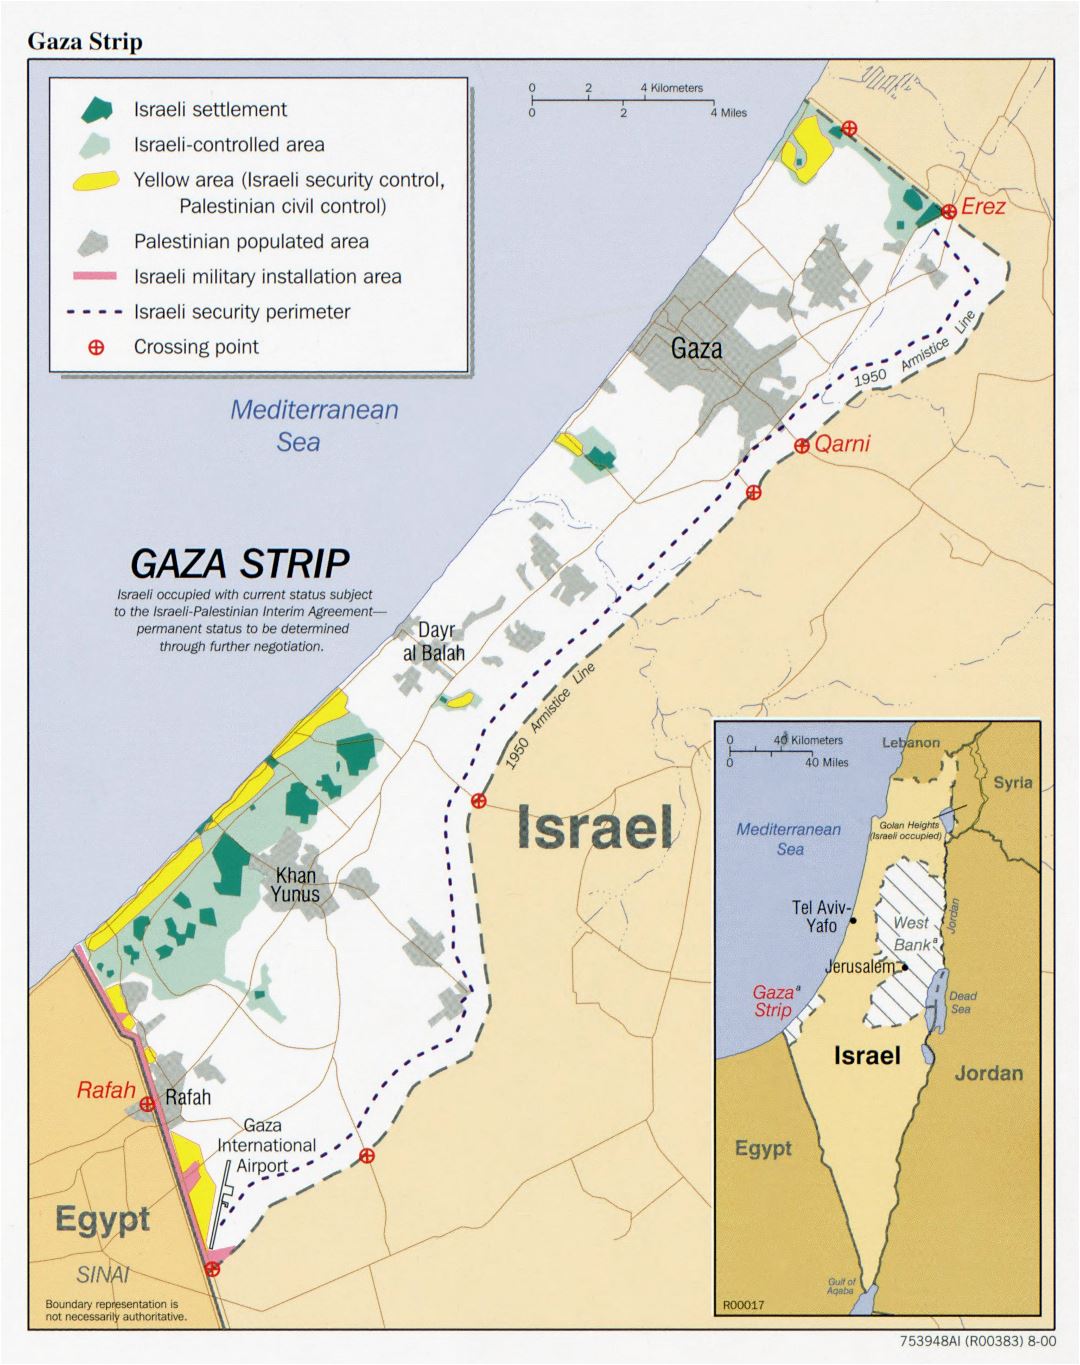 Grande detallado mapa político de la Franja de Gaza con otras marcas - 2000